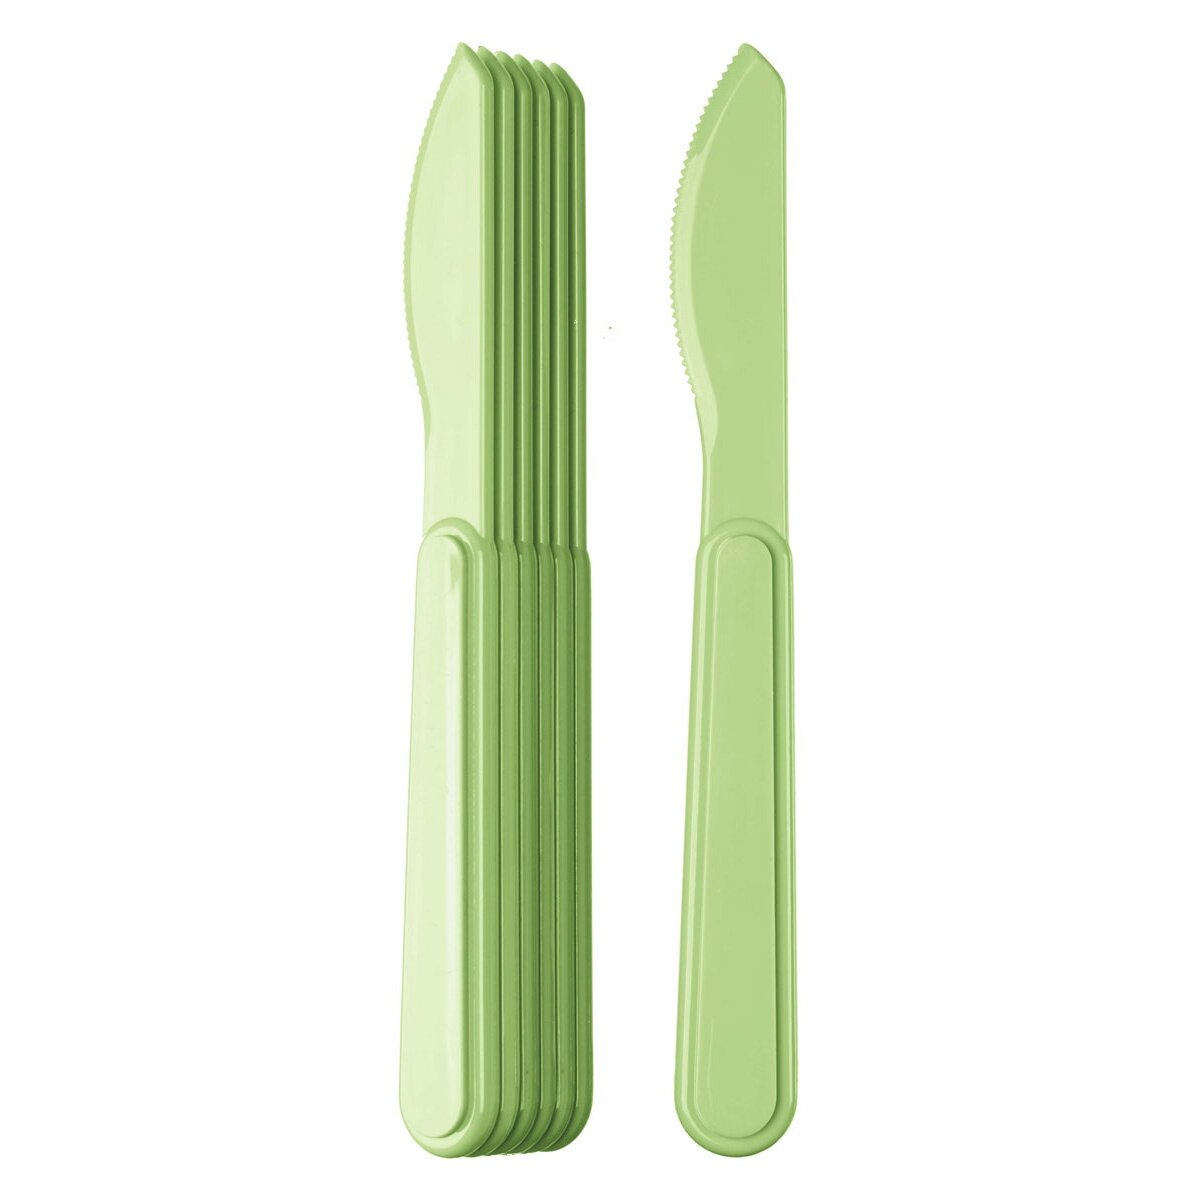 Комплект ножей Idiland 6 шт салатовый 18 см (221129020/04)